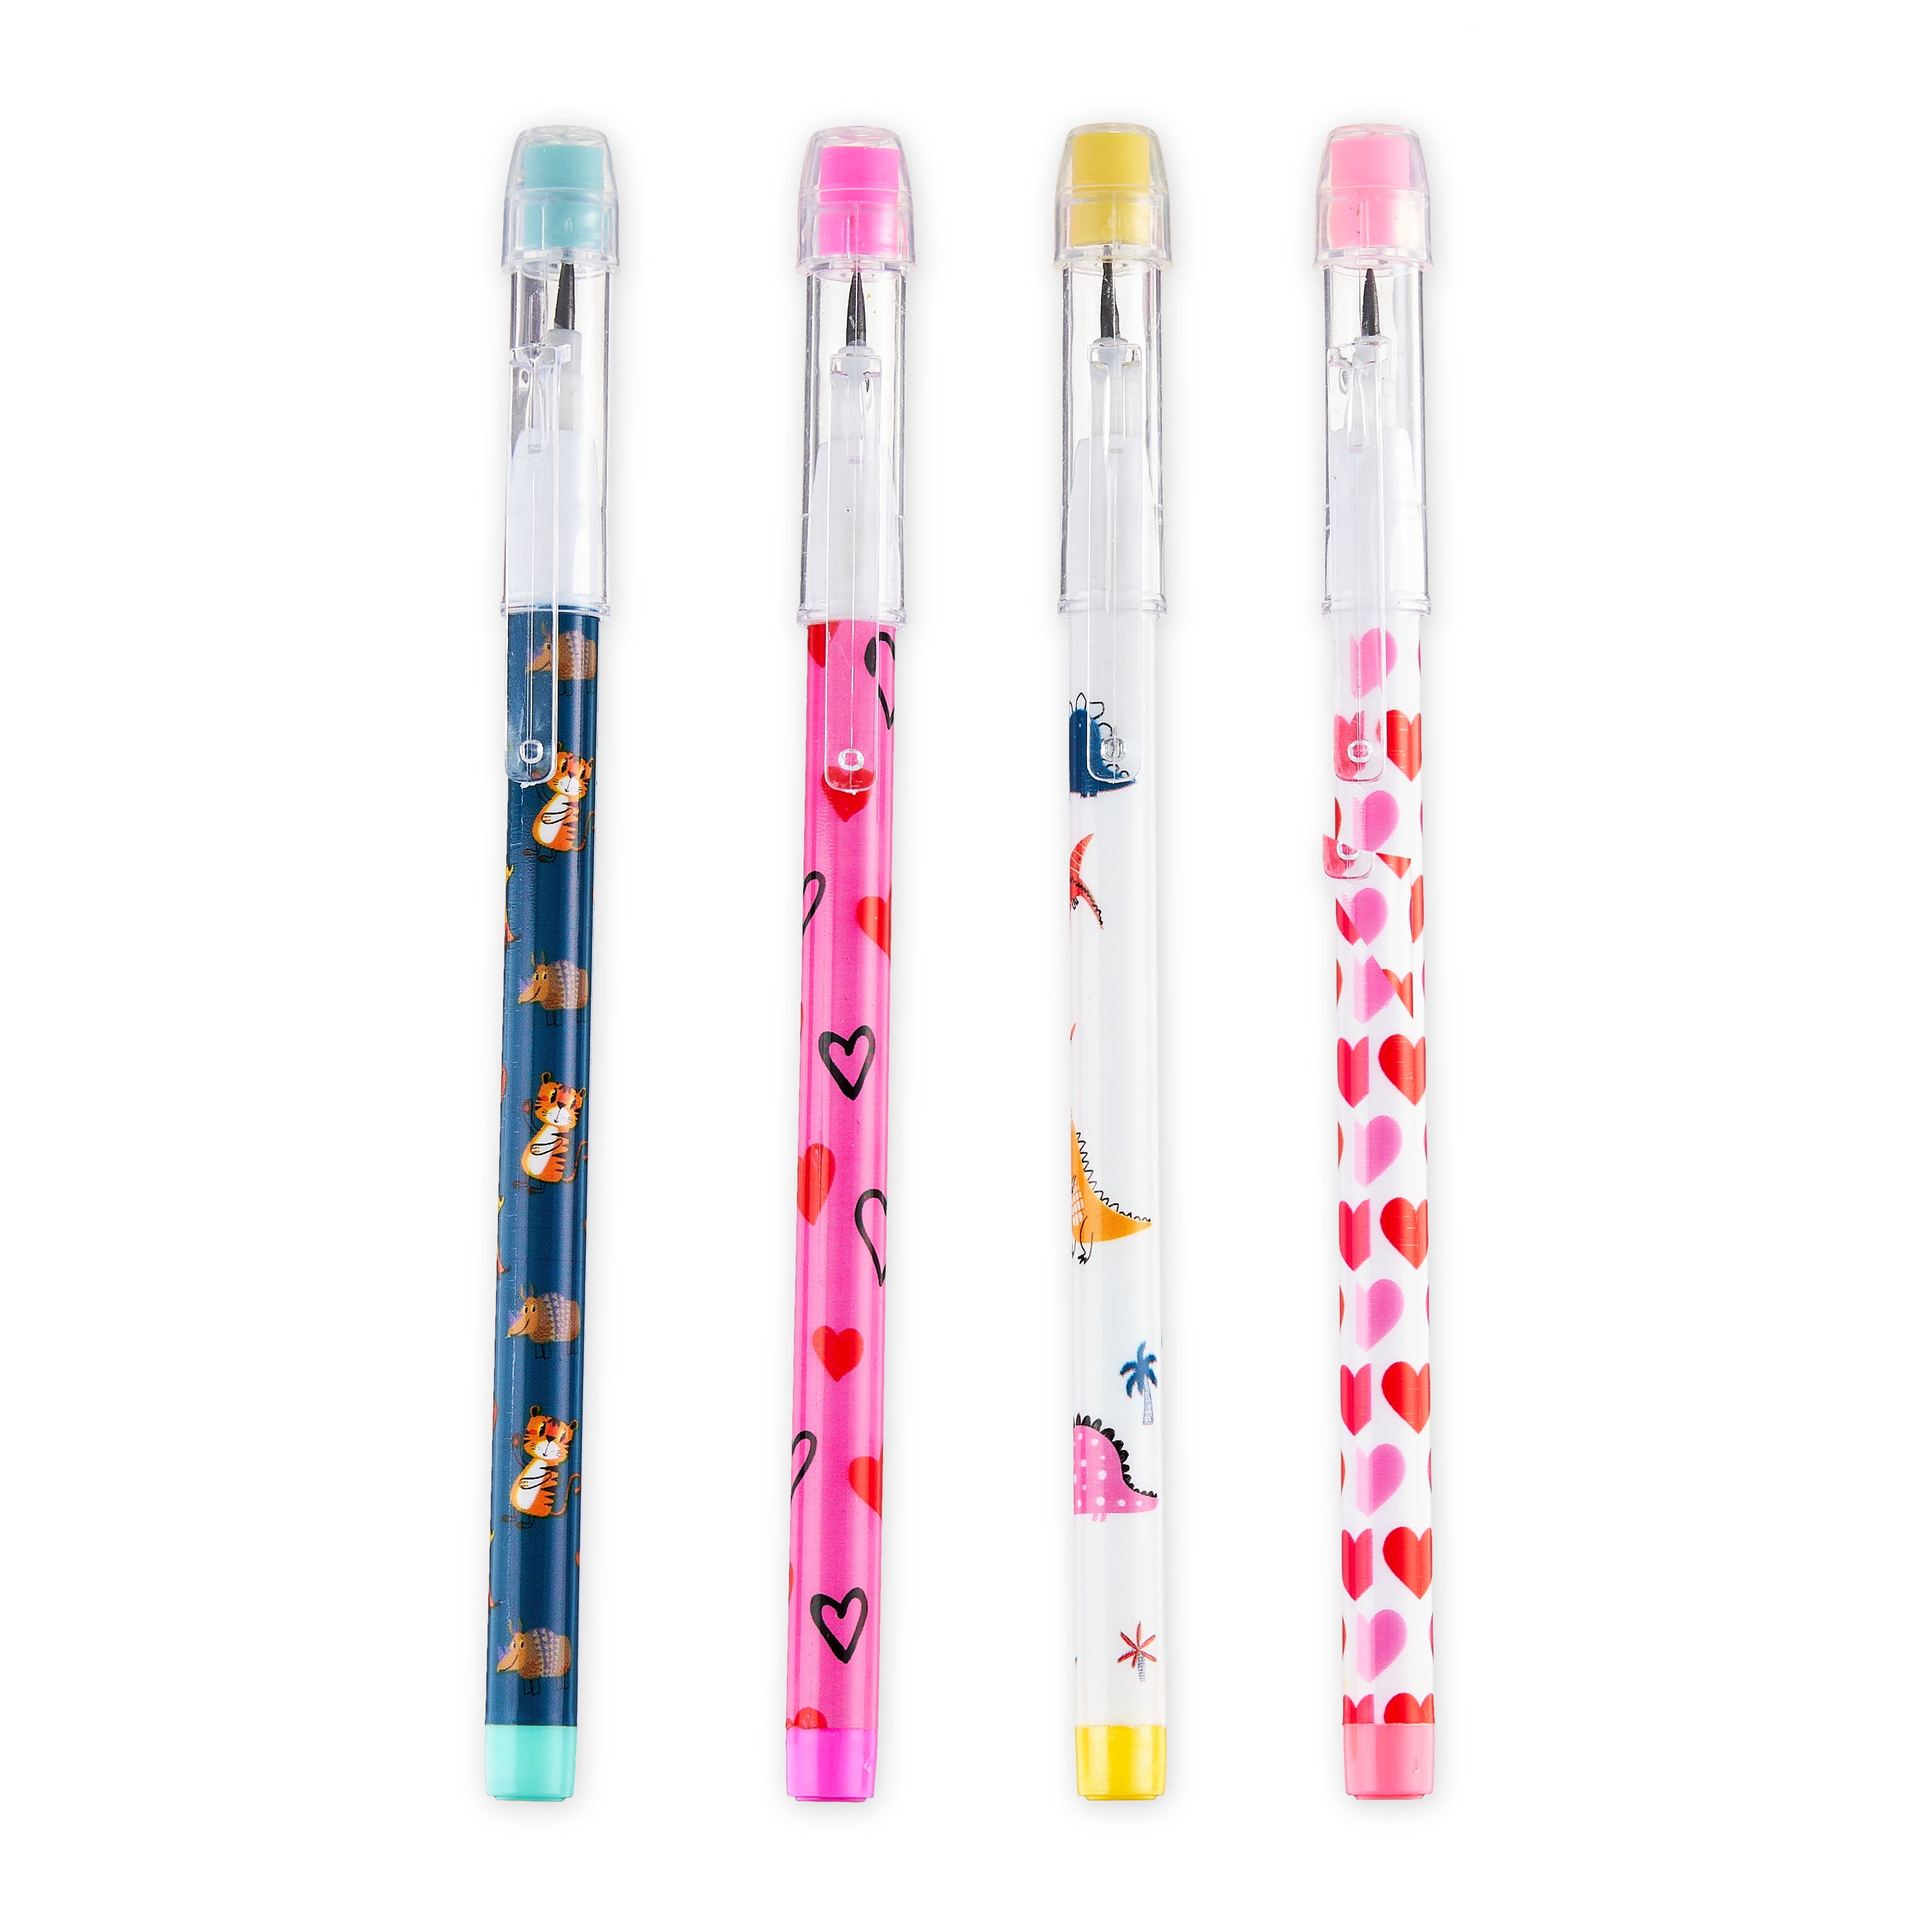 Happy Birthday Multi-Colored Pencils - 12 pencils